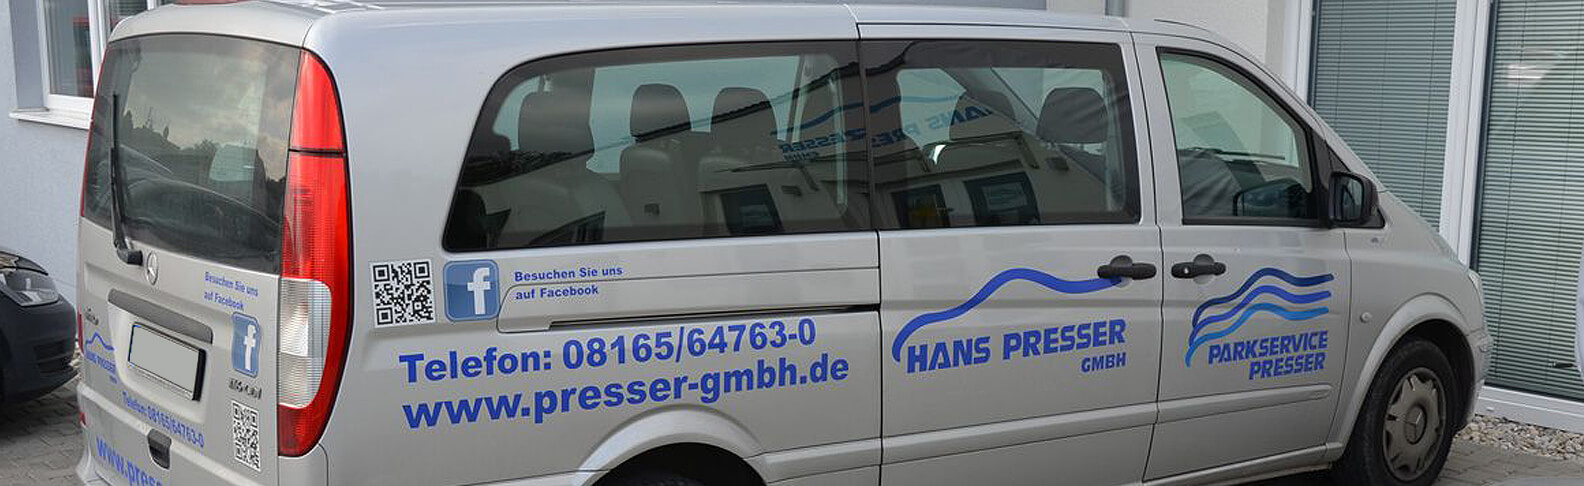 Hans Presser GmbH - Einsatzwagen